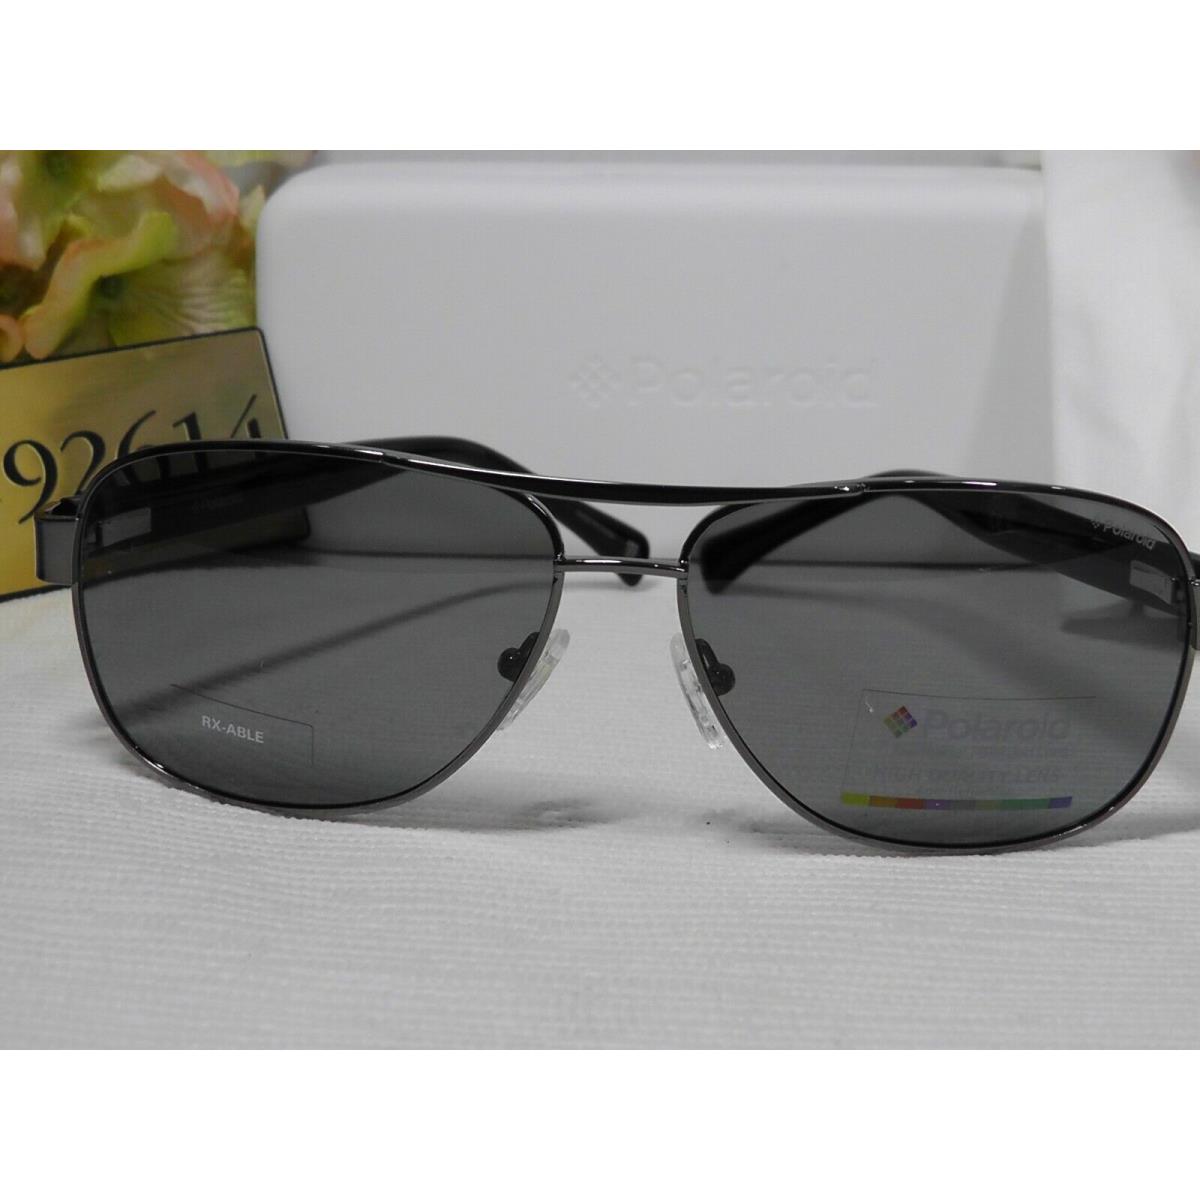 Polaroid sunglasses Aviator - Black/Ruthenium Frame, Gray Lens 3